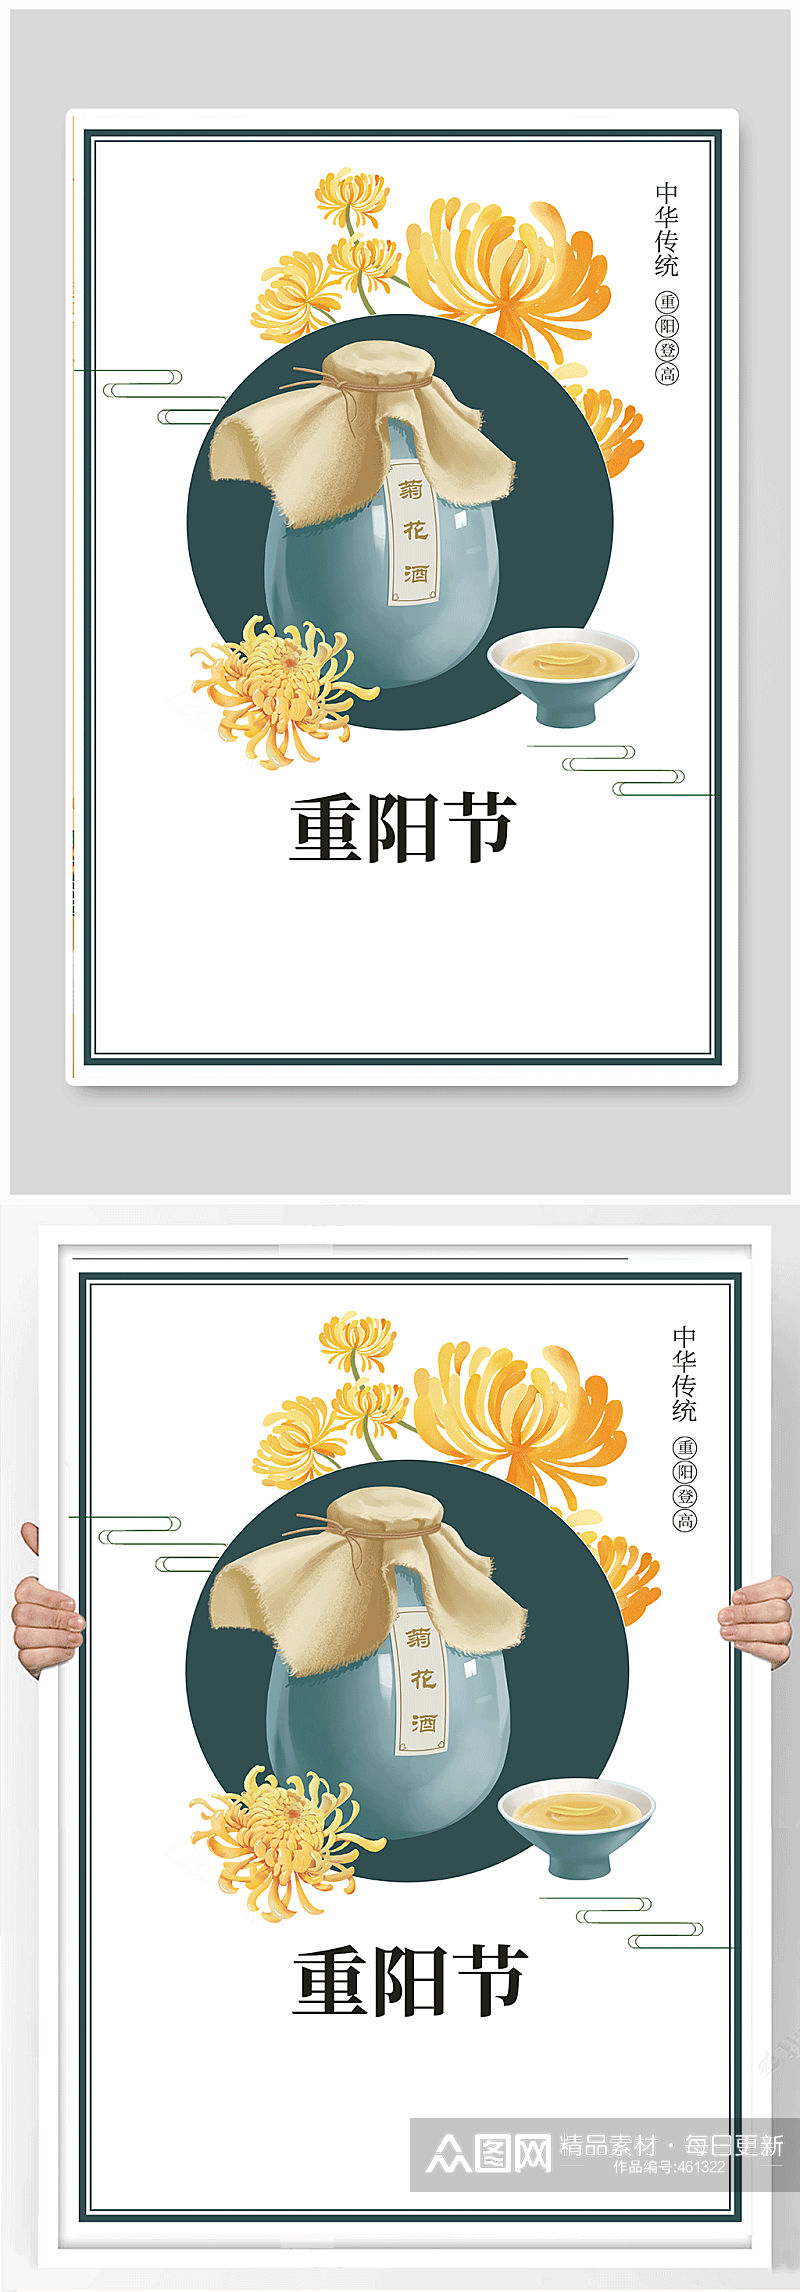 重阳节传统文化宣传海报素材